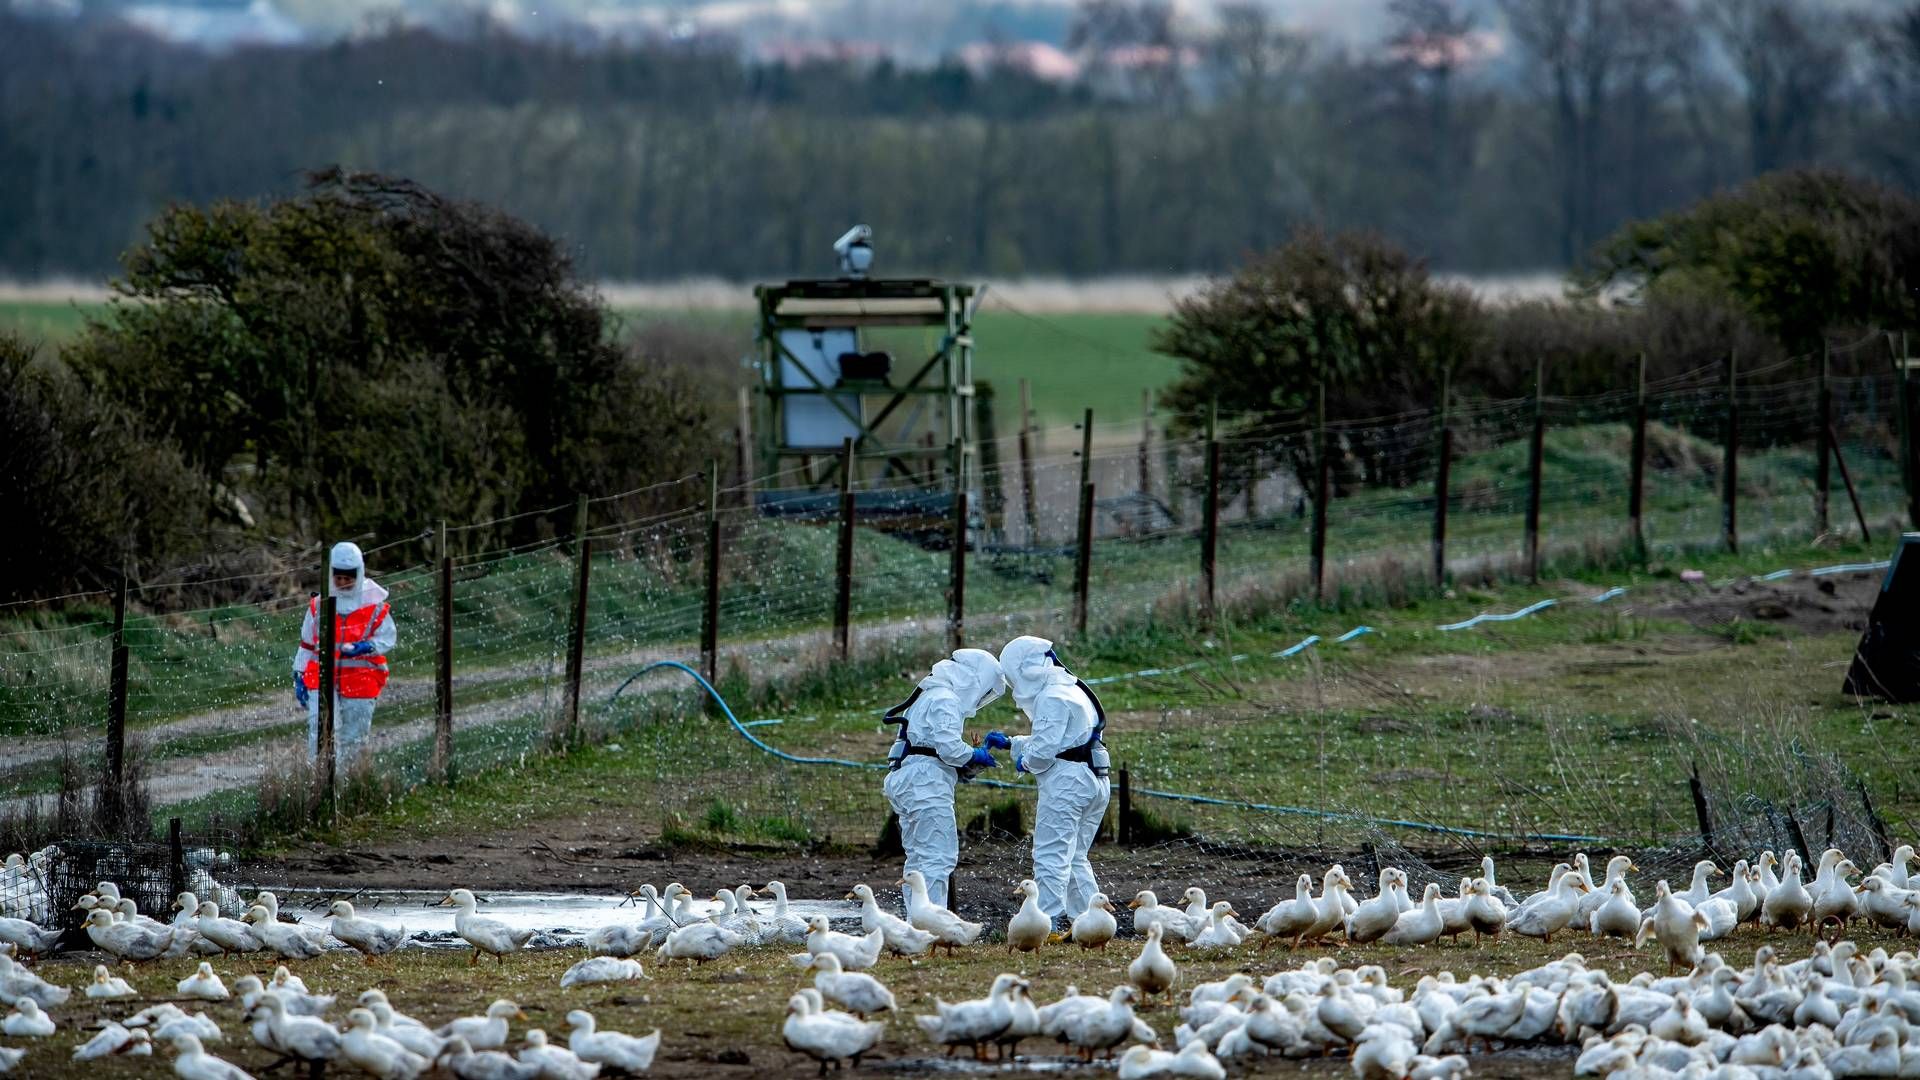 Det giver anledning til bekymring, at fugleinfluenza har spredt sig til kvæg og mennesker. | Foto: René Schütze